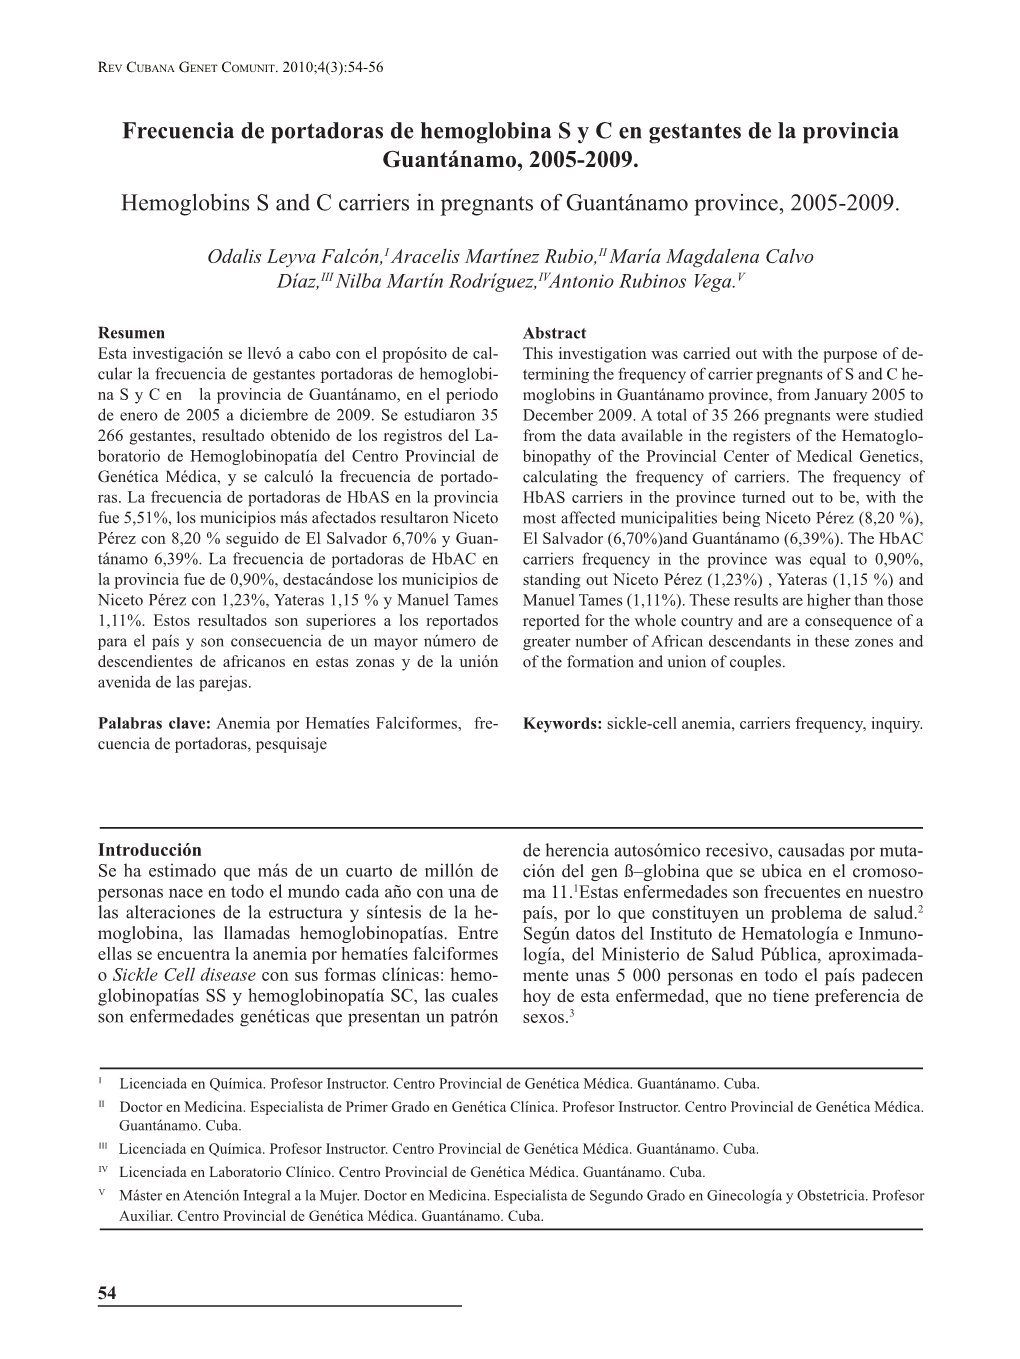 Frecuencia De Portadoras De Hemoglobina S Y C En Gestantes De La Provincia Guantánamo, 2005-2009. Hemoglobins S and C Carriers